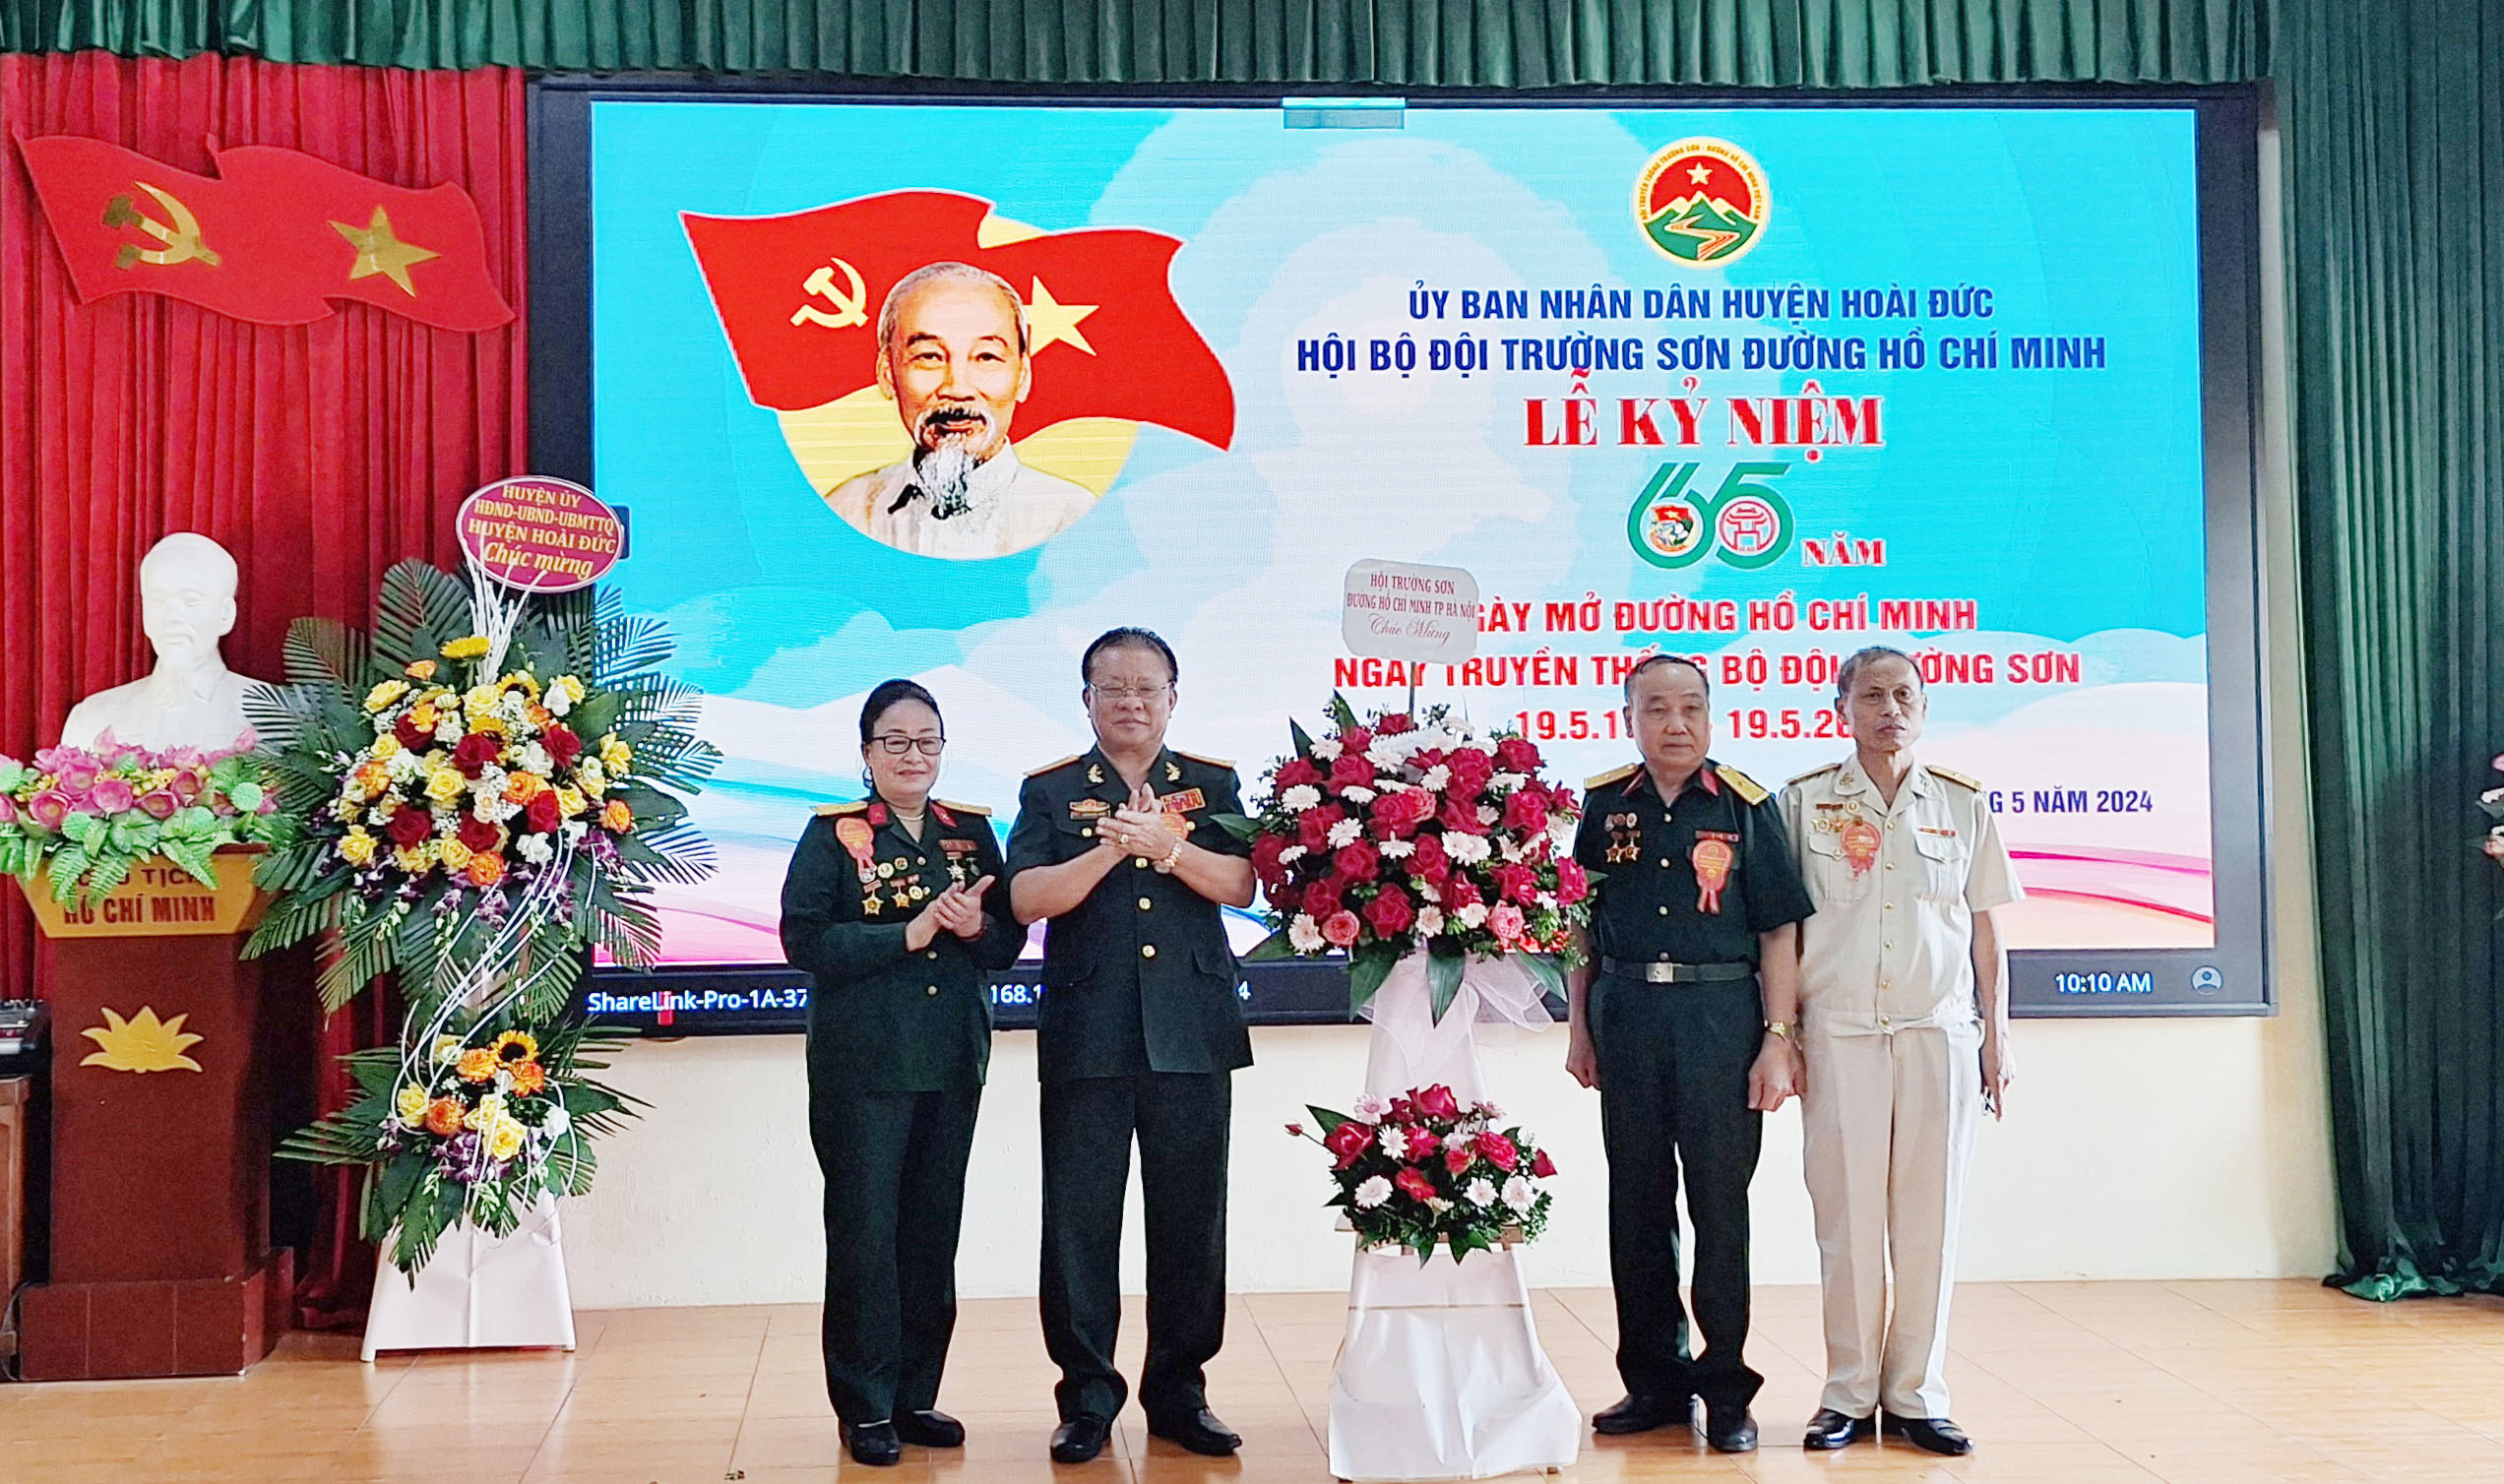  Hội Bộ đội Trường Sơn - đường Hồ Chí Minh huyện Hoài Đức tổ chức Lễ kỷ niệm 65 năm Ngày mở đường Hồ Chí Minh 